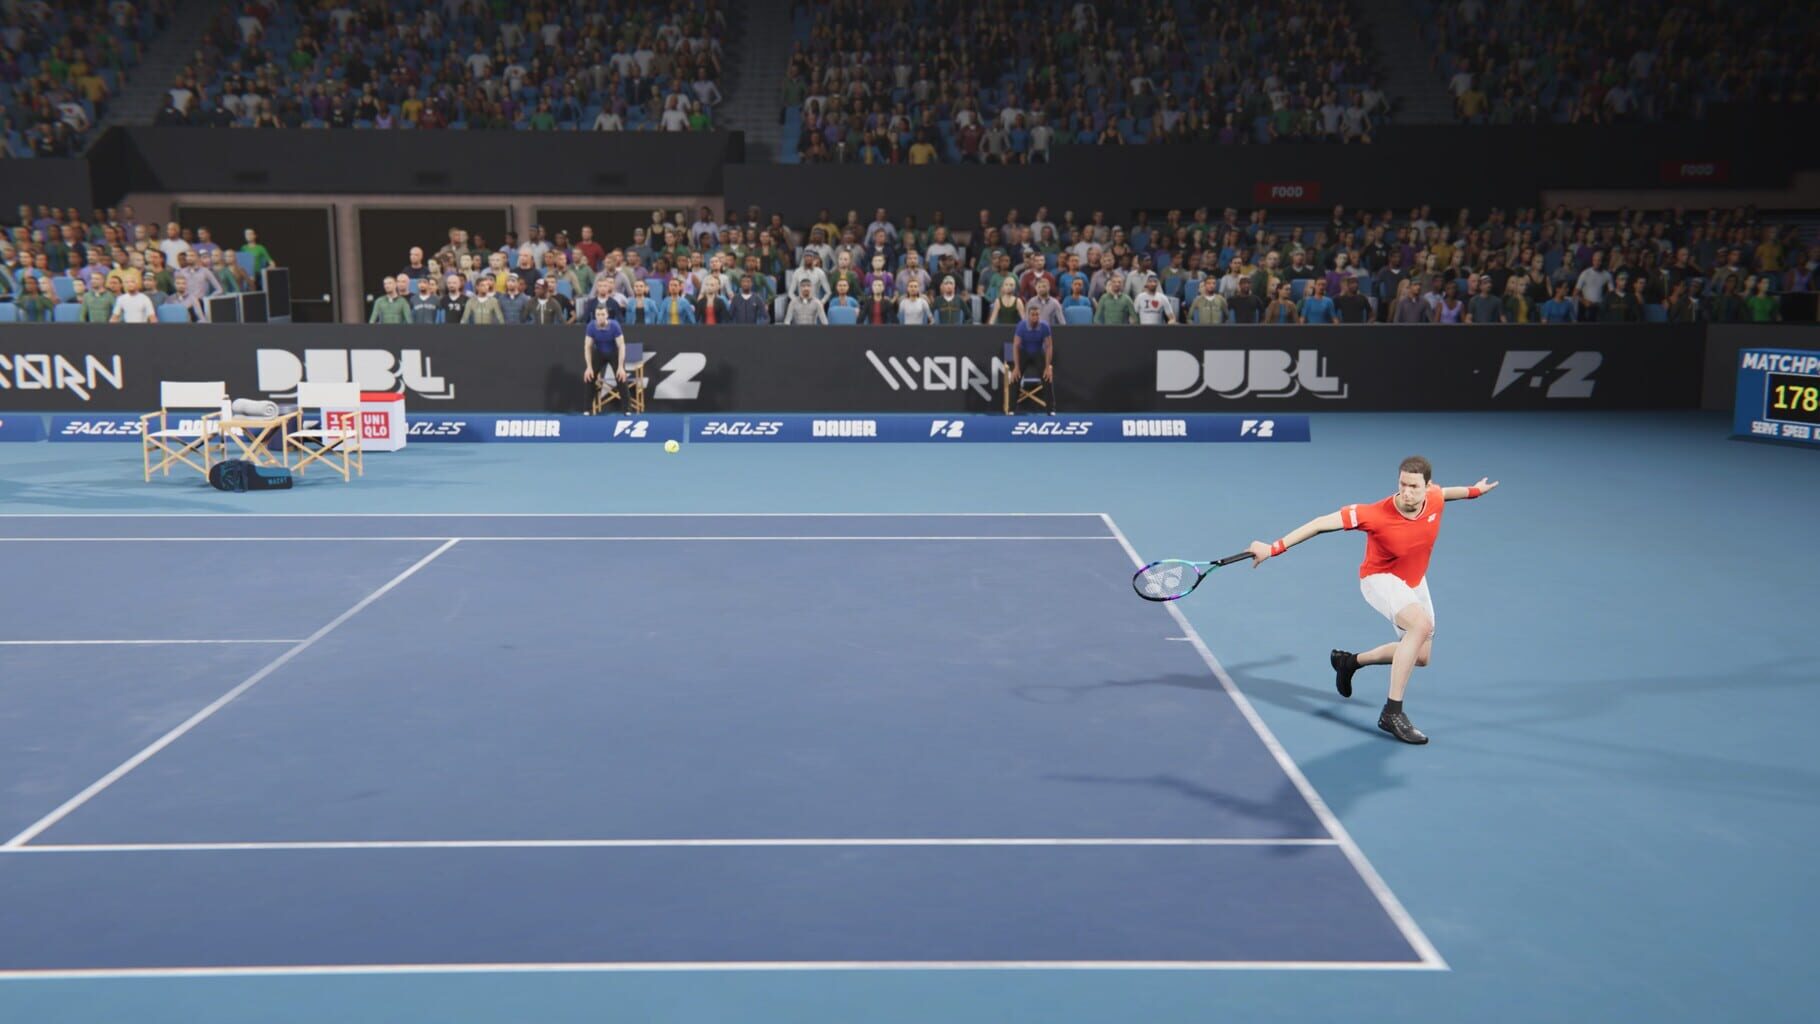 Matchpoint - Tennis Championships screenshots